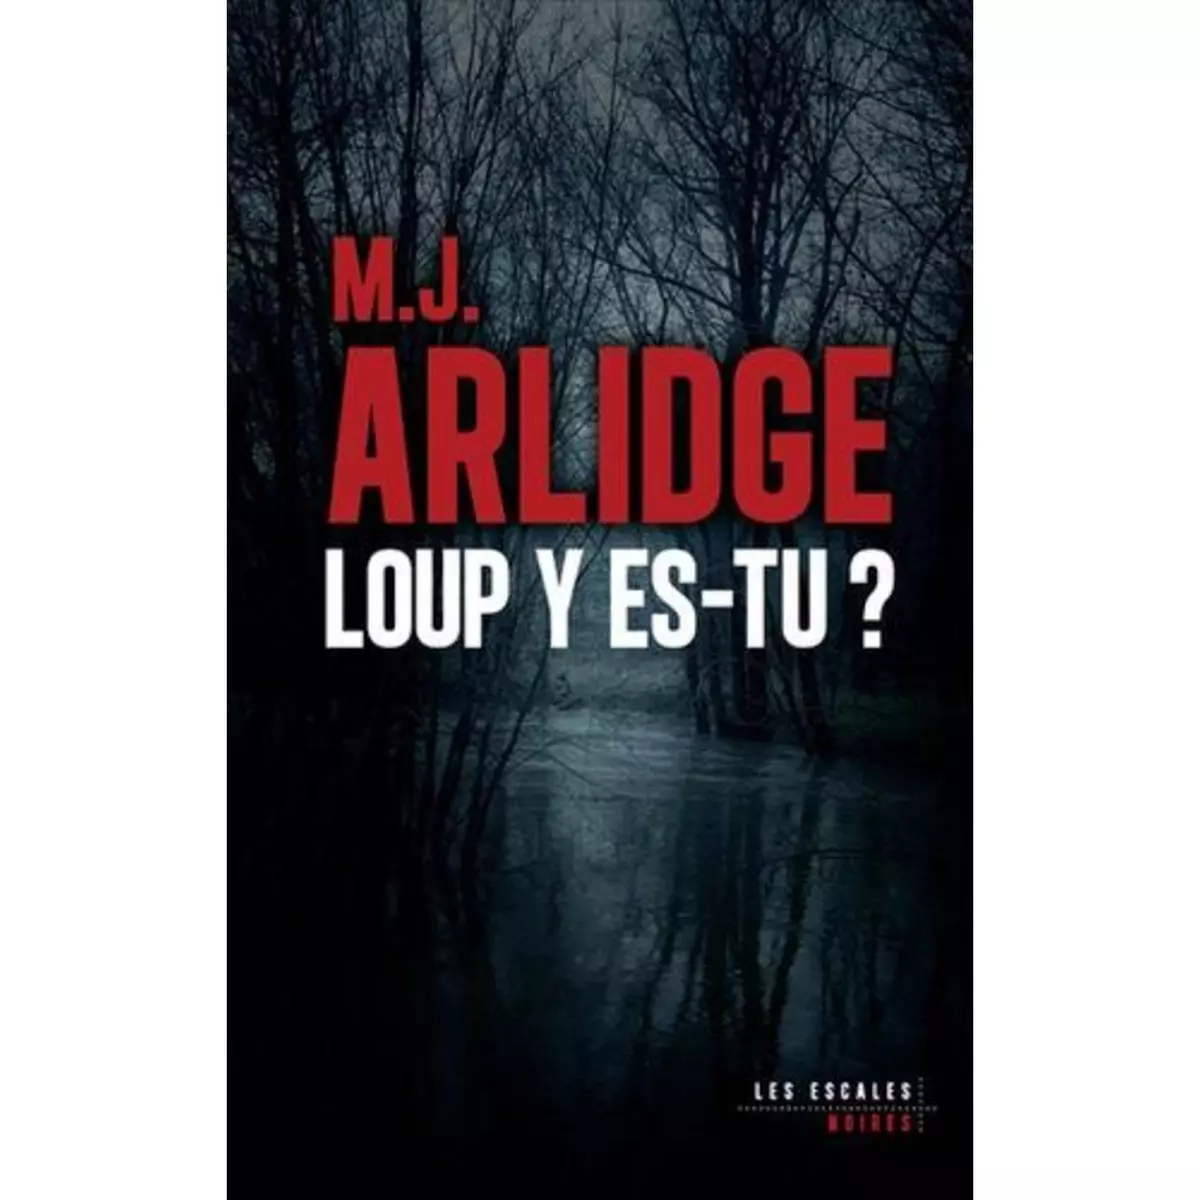  LOUP Y ES-TU ?, Arlidge M. J.